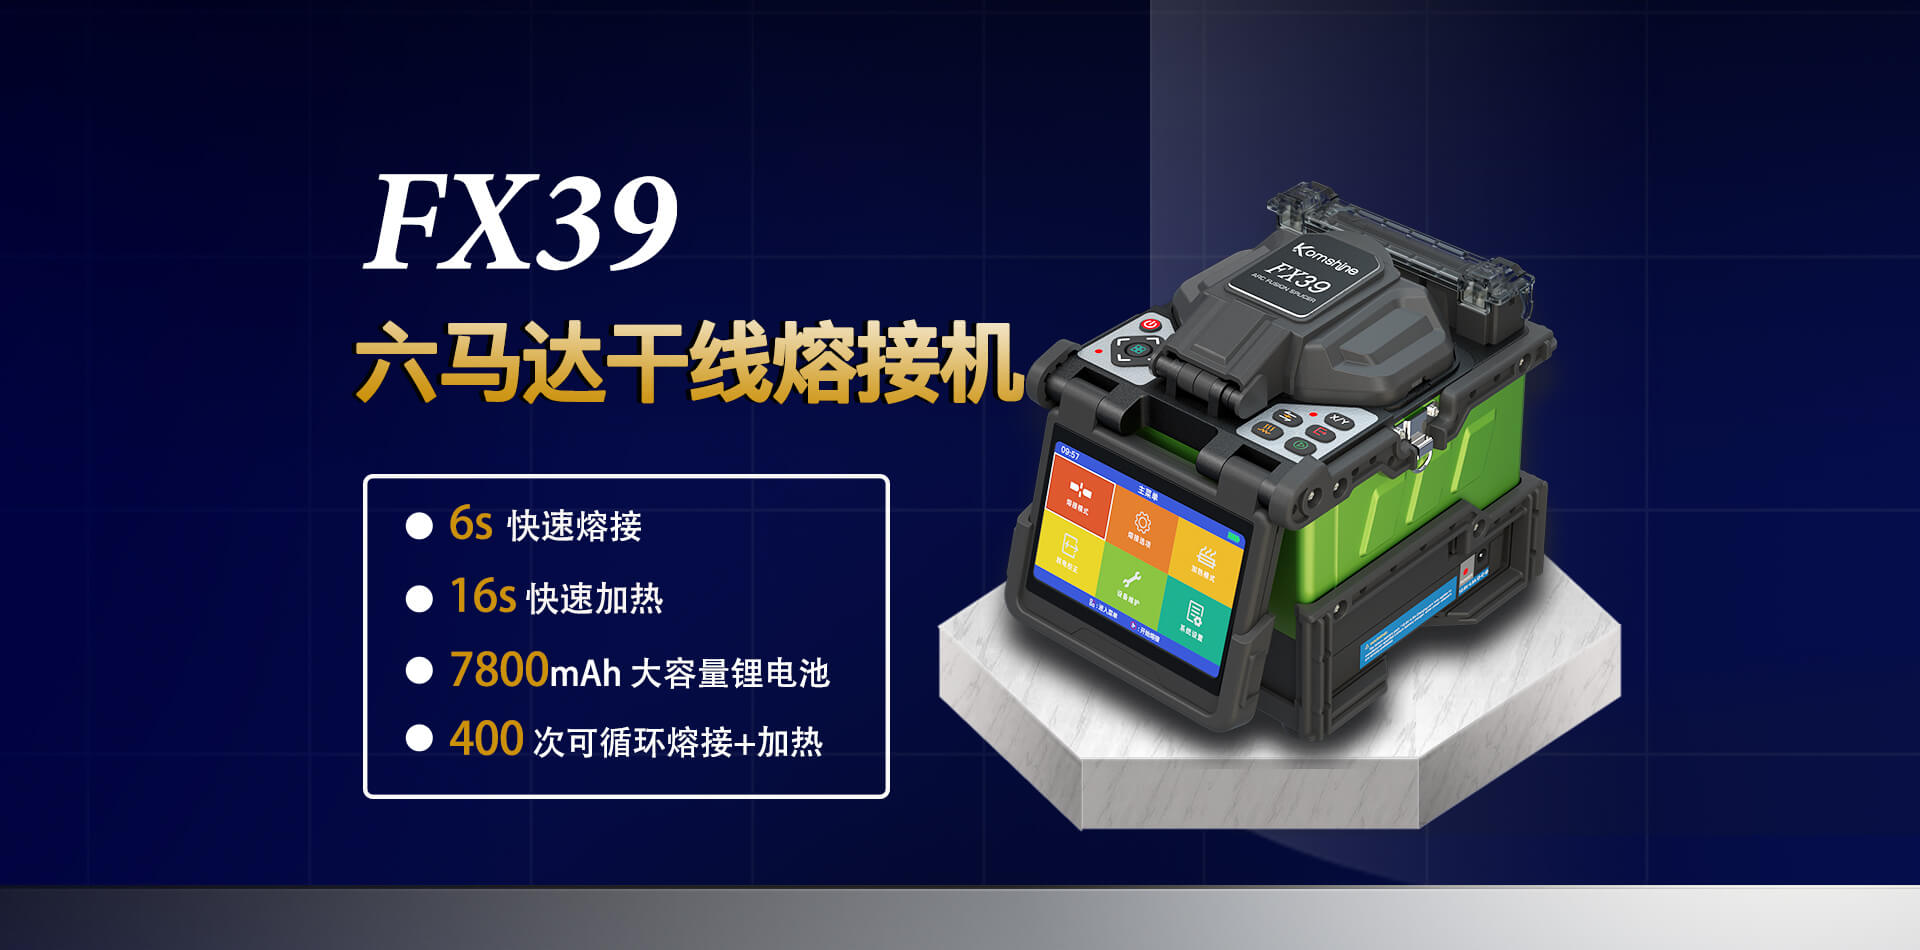 FX39 干线熔接机